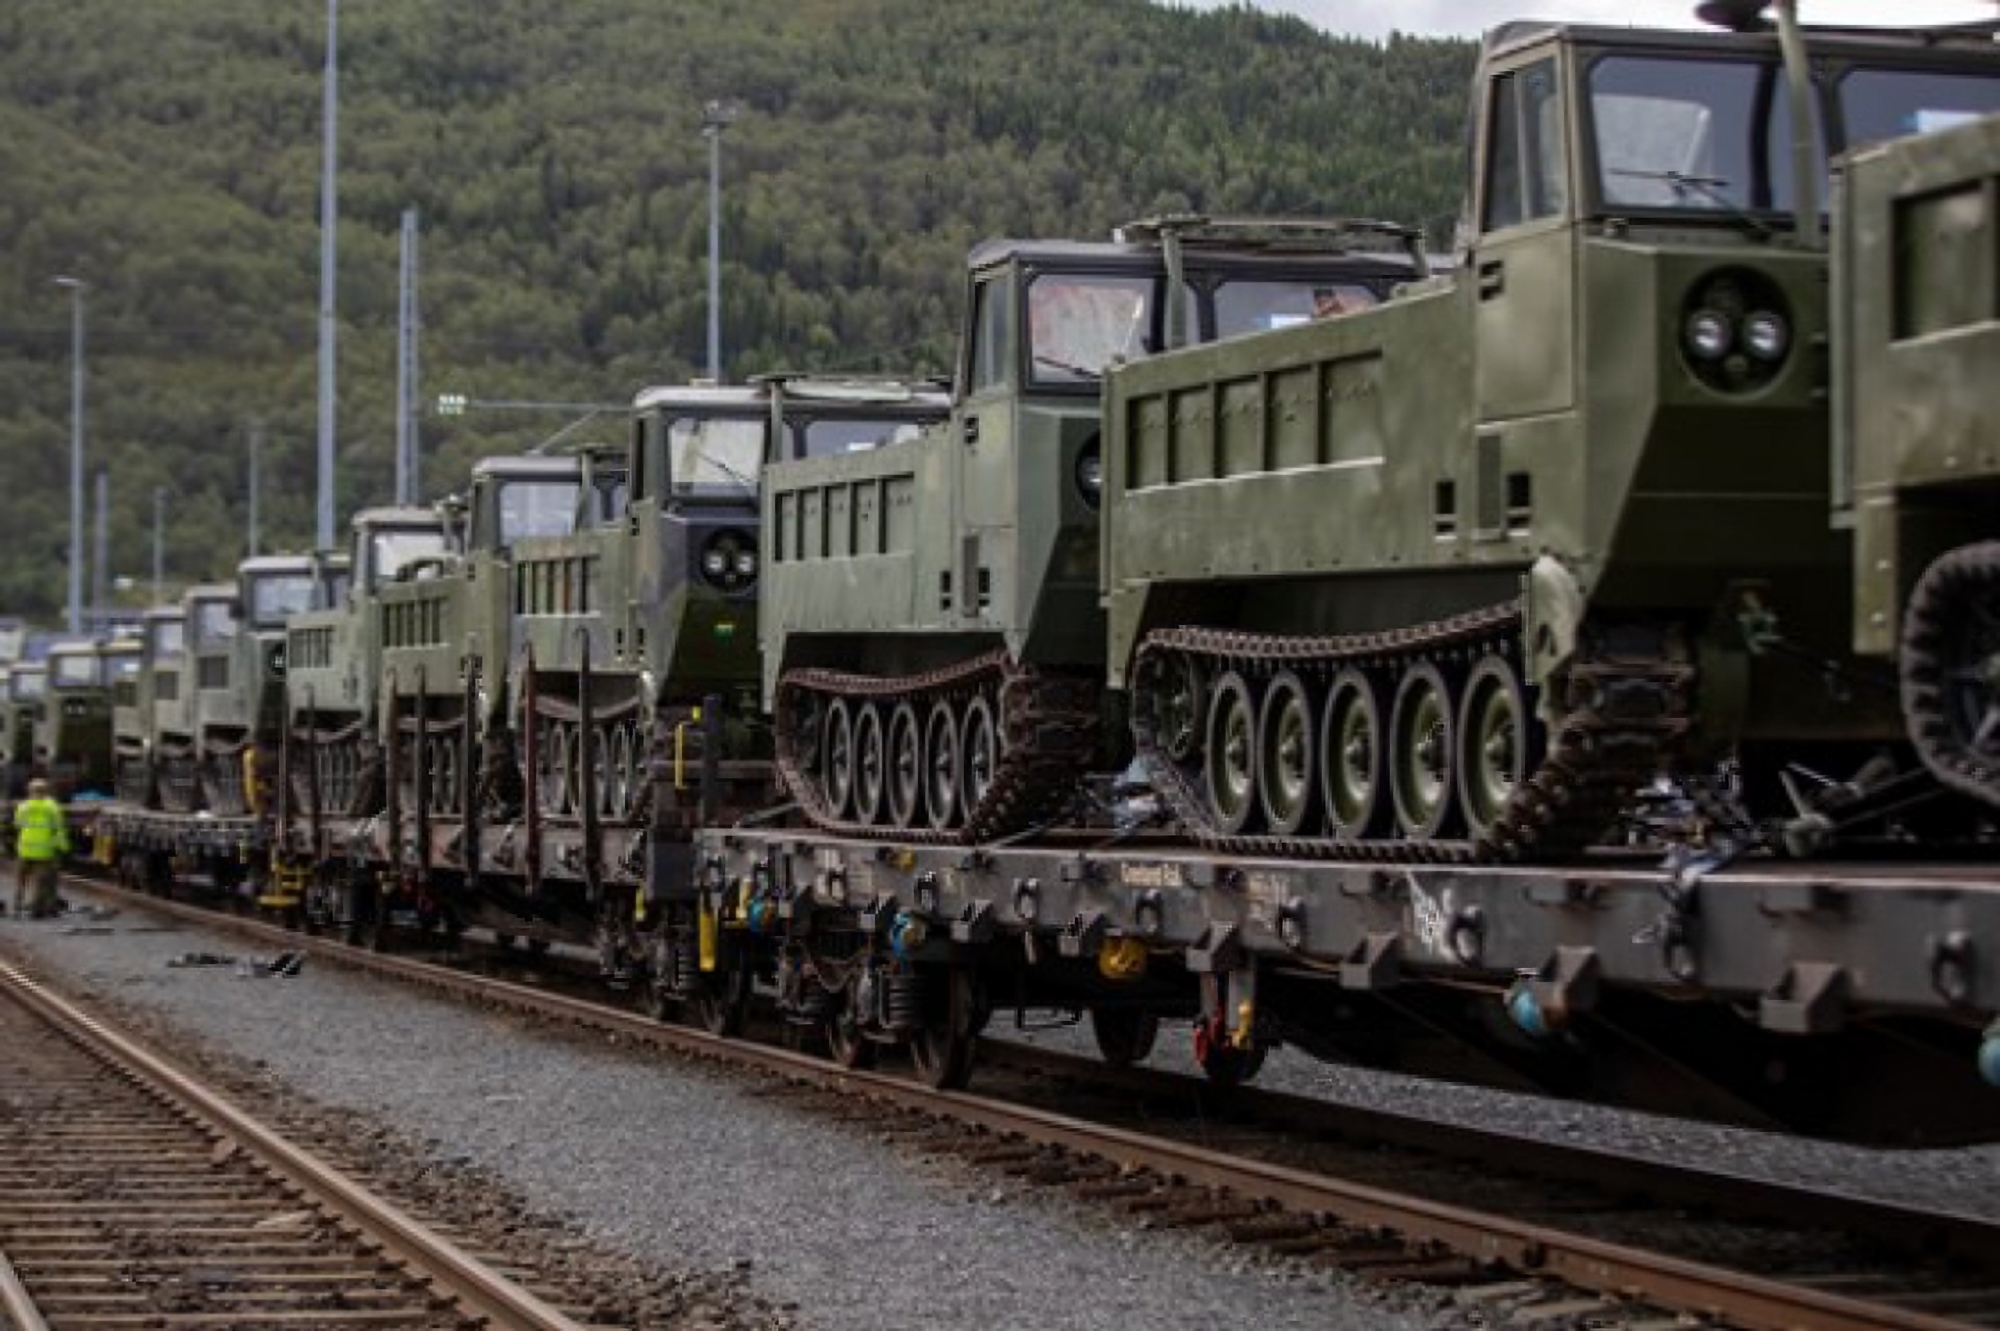 Norwegen wird 50 M548-Kettentransporter an die AFU übergeben, die auf dem M113 APC basieren.